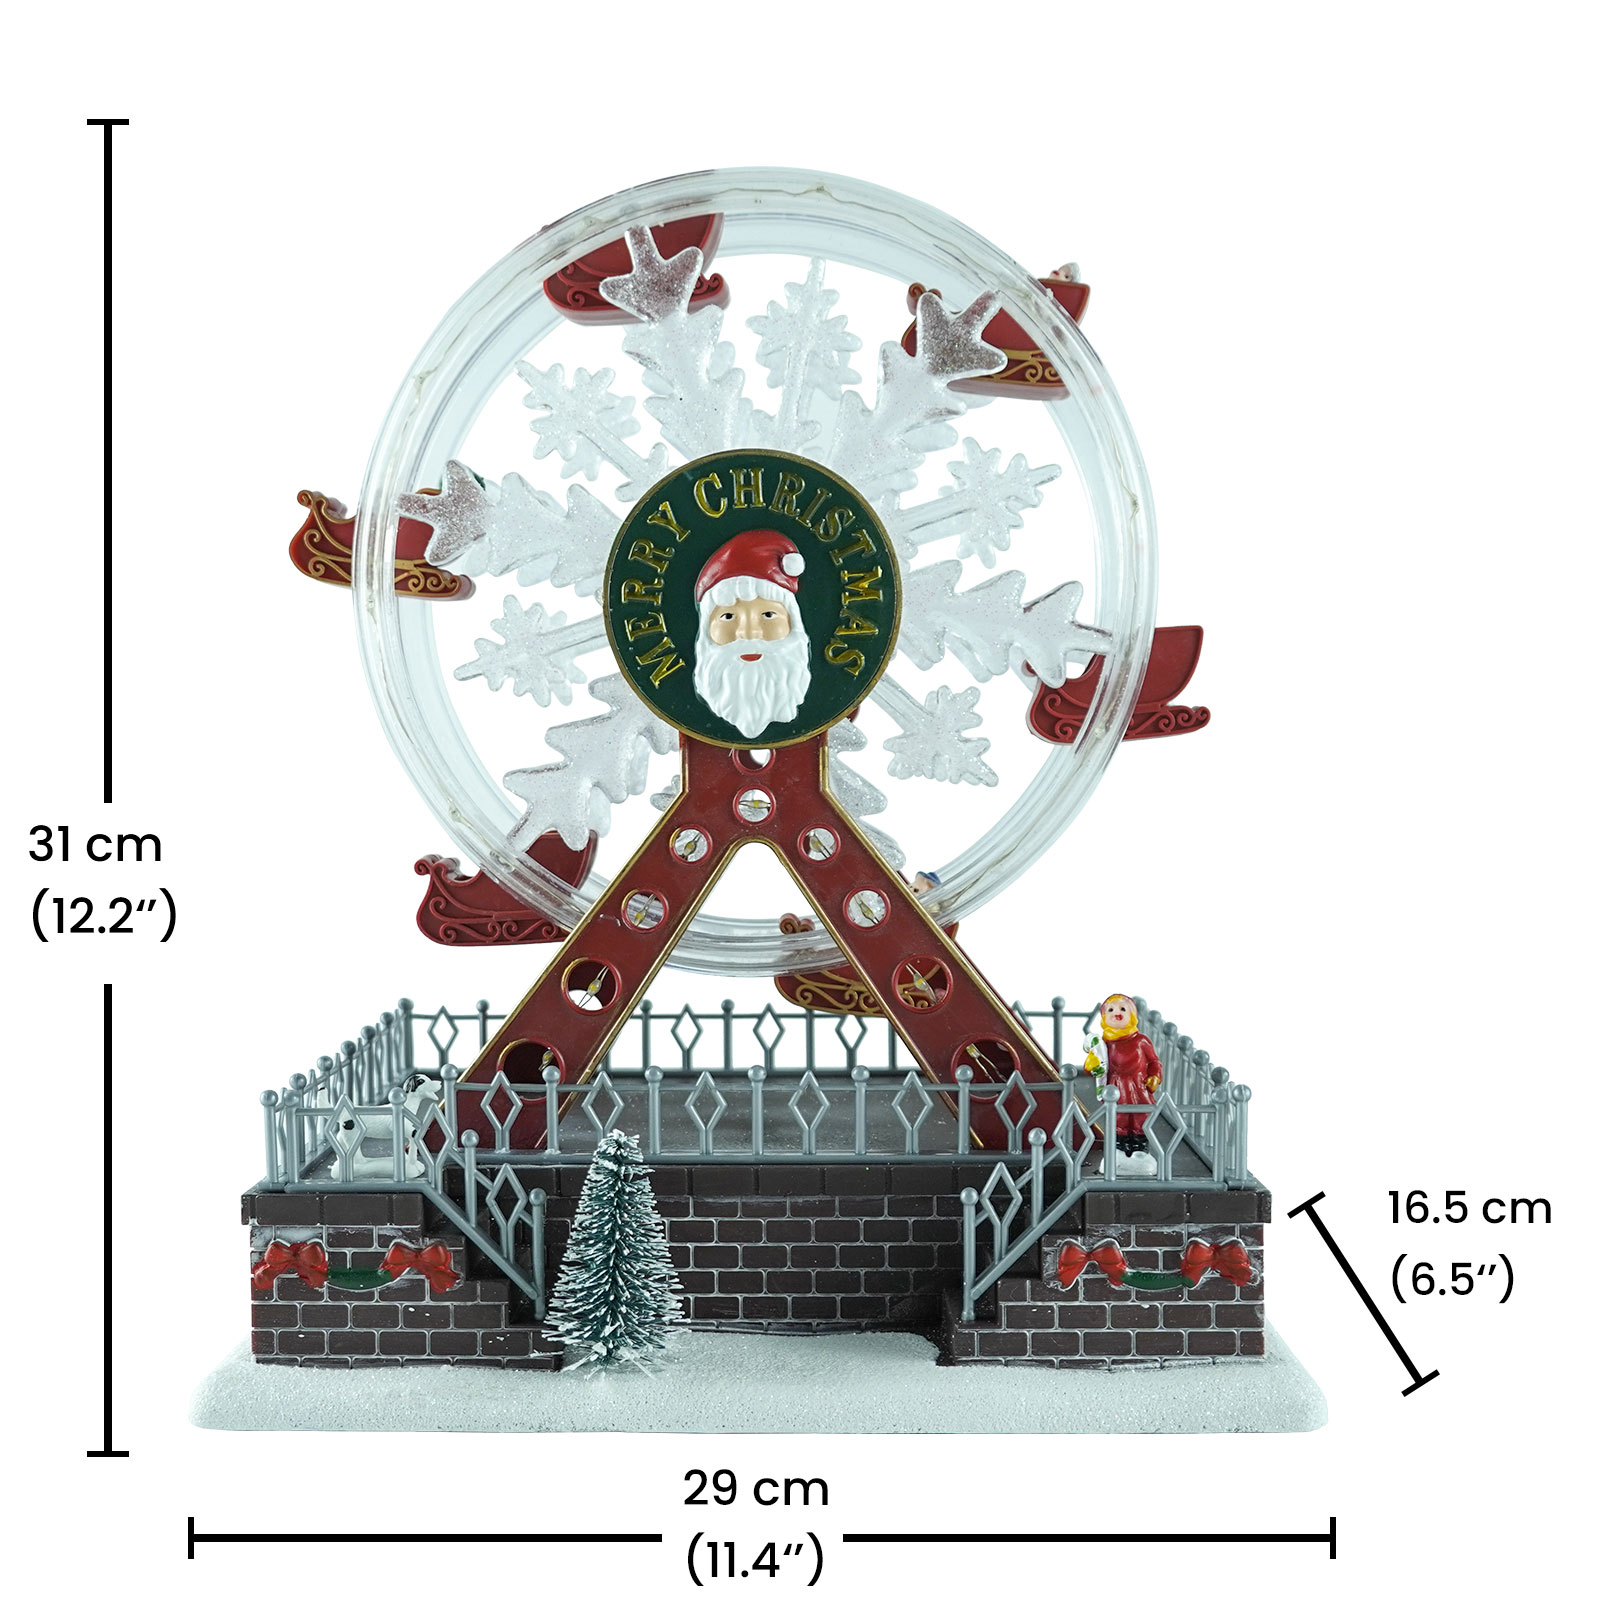 Customized Mult flashing Color Led illuminated Xmas Ferris wheel Scene musical Christmas decoration with Santa face Featured Image